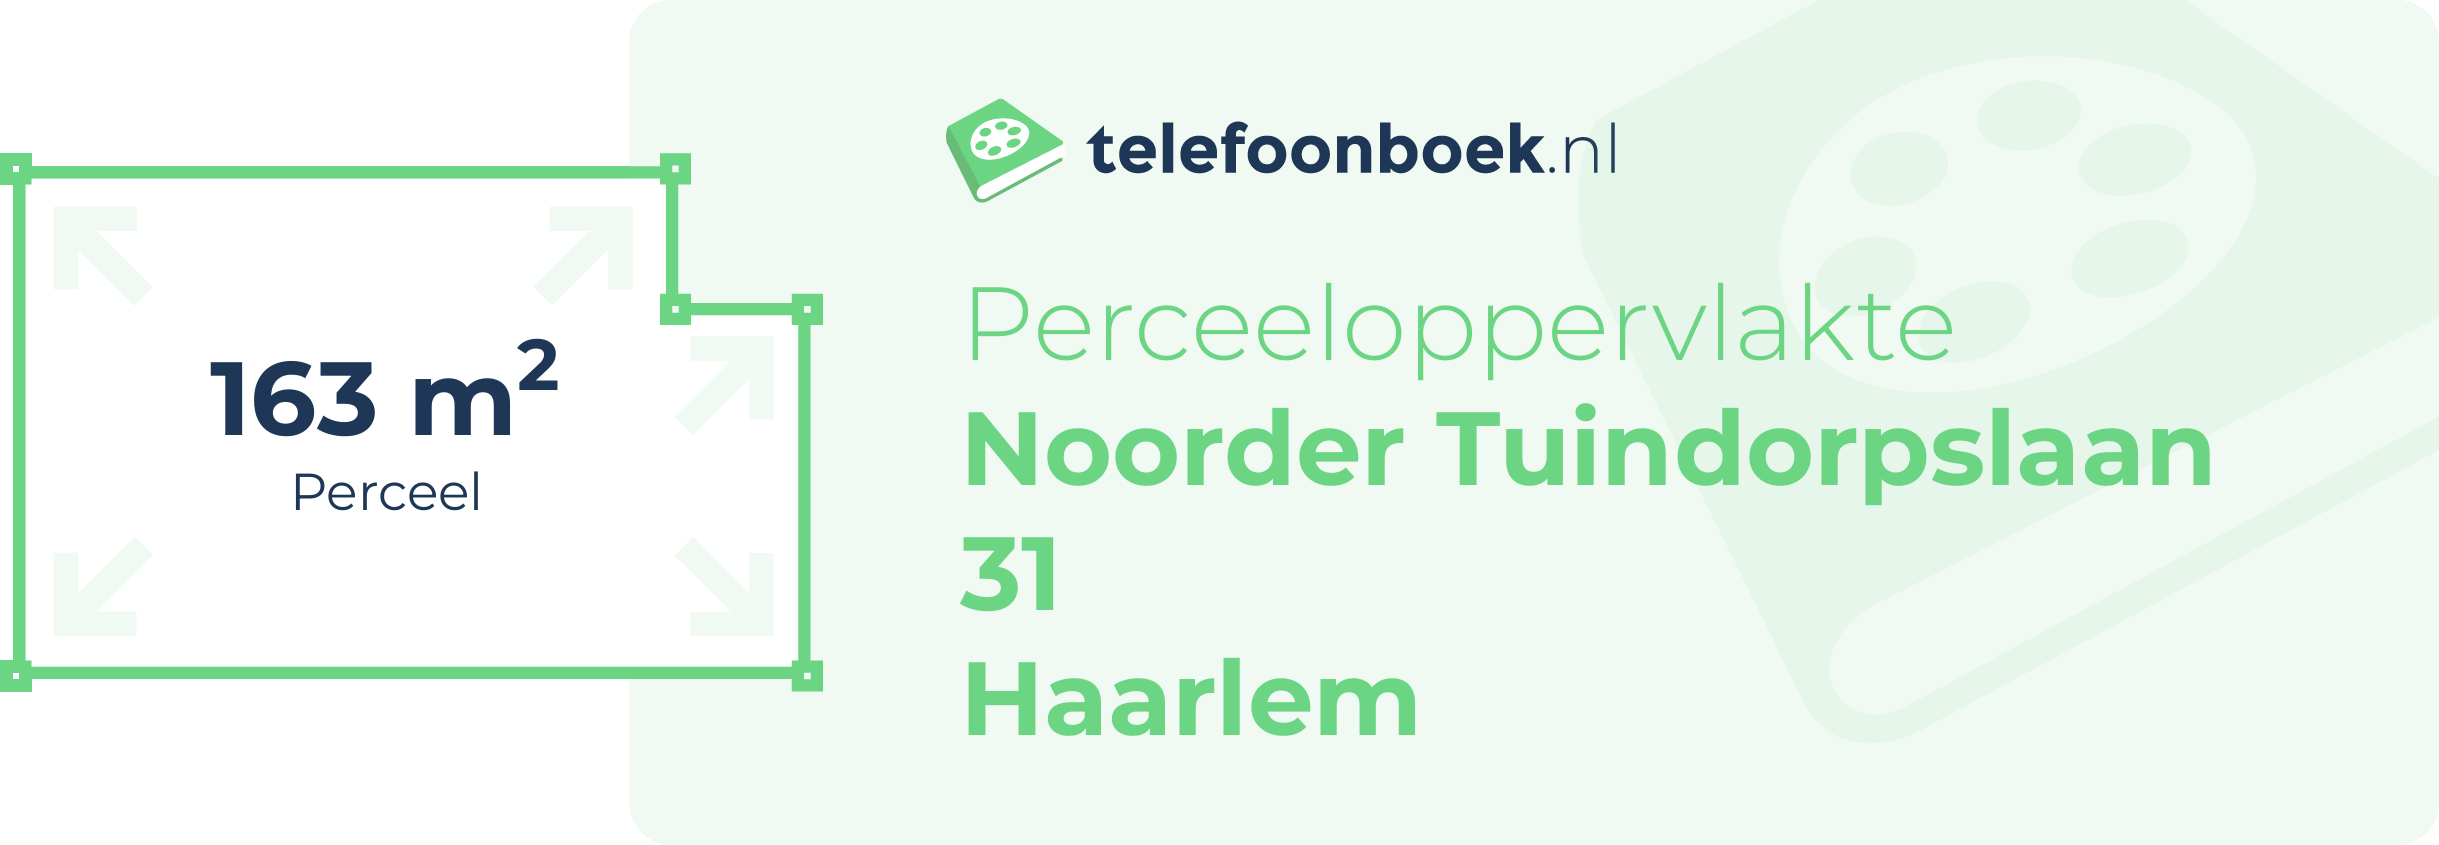 Perceeloppervlakte Noorder Tuindorpslaan 31 Haarlem